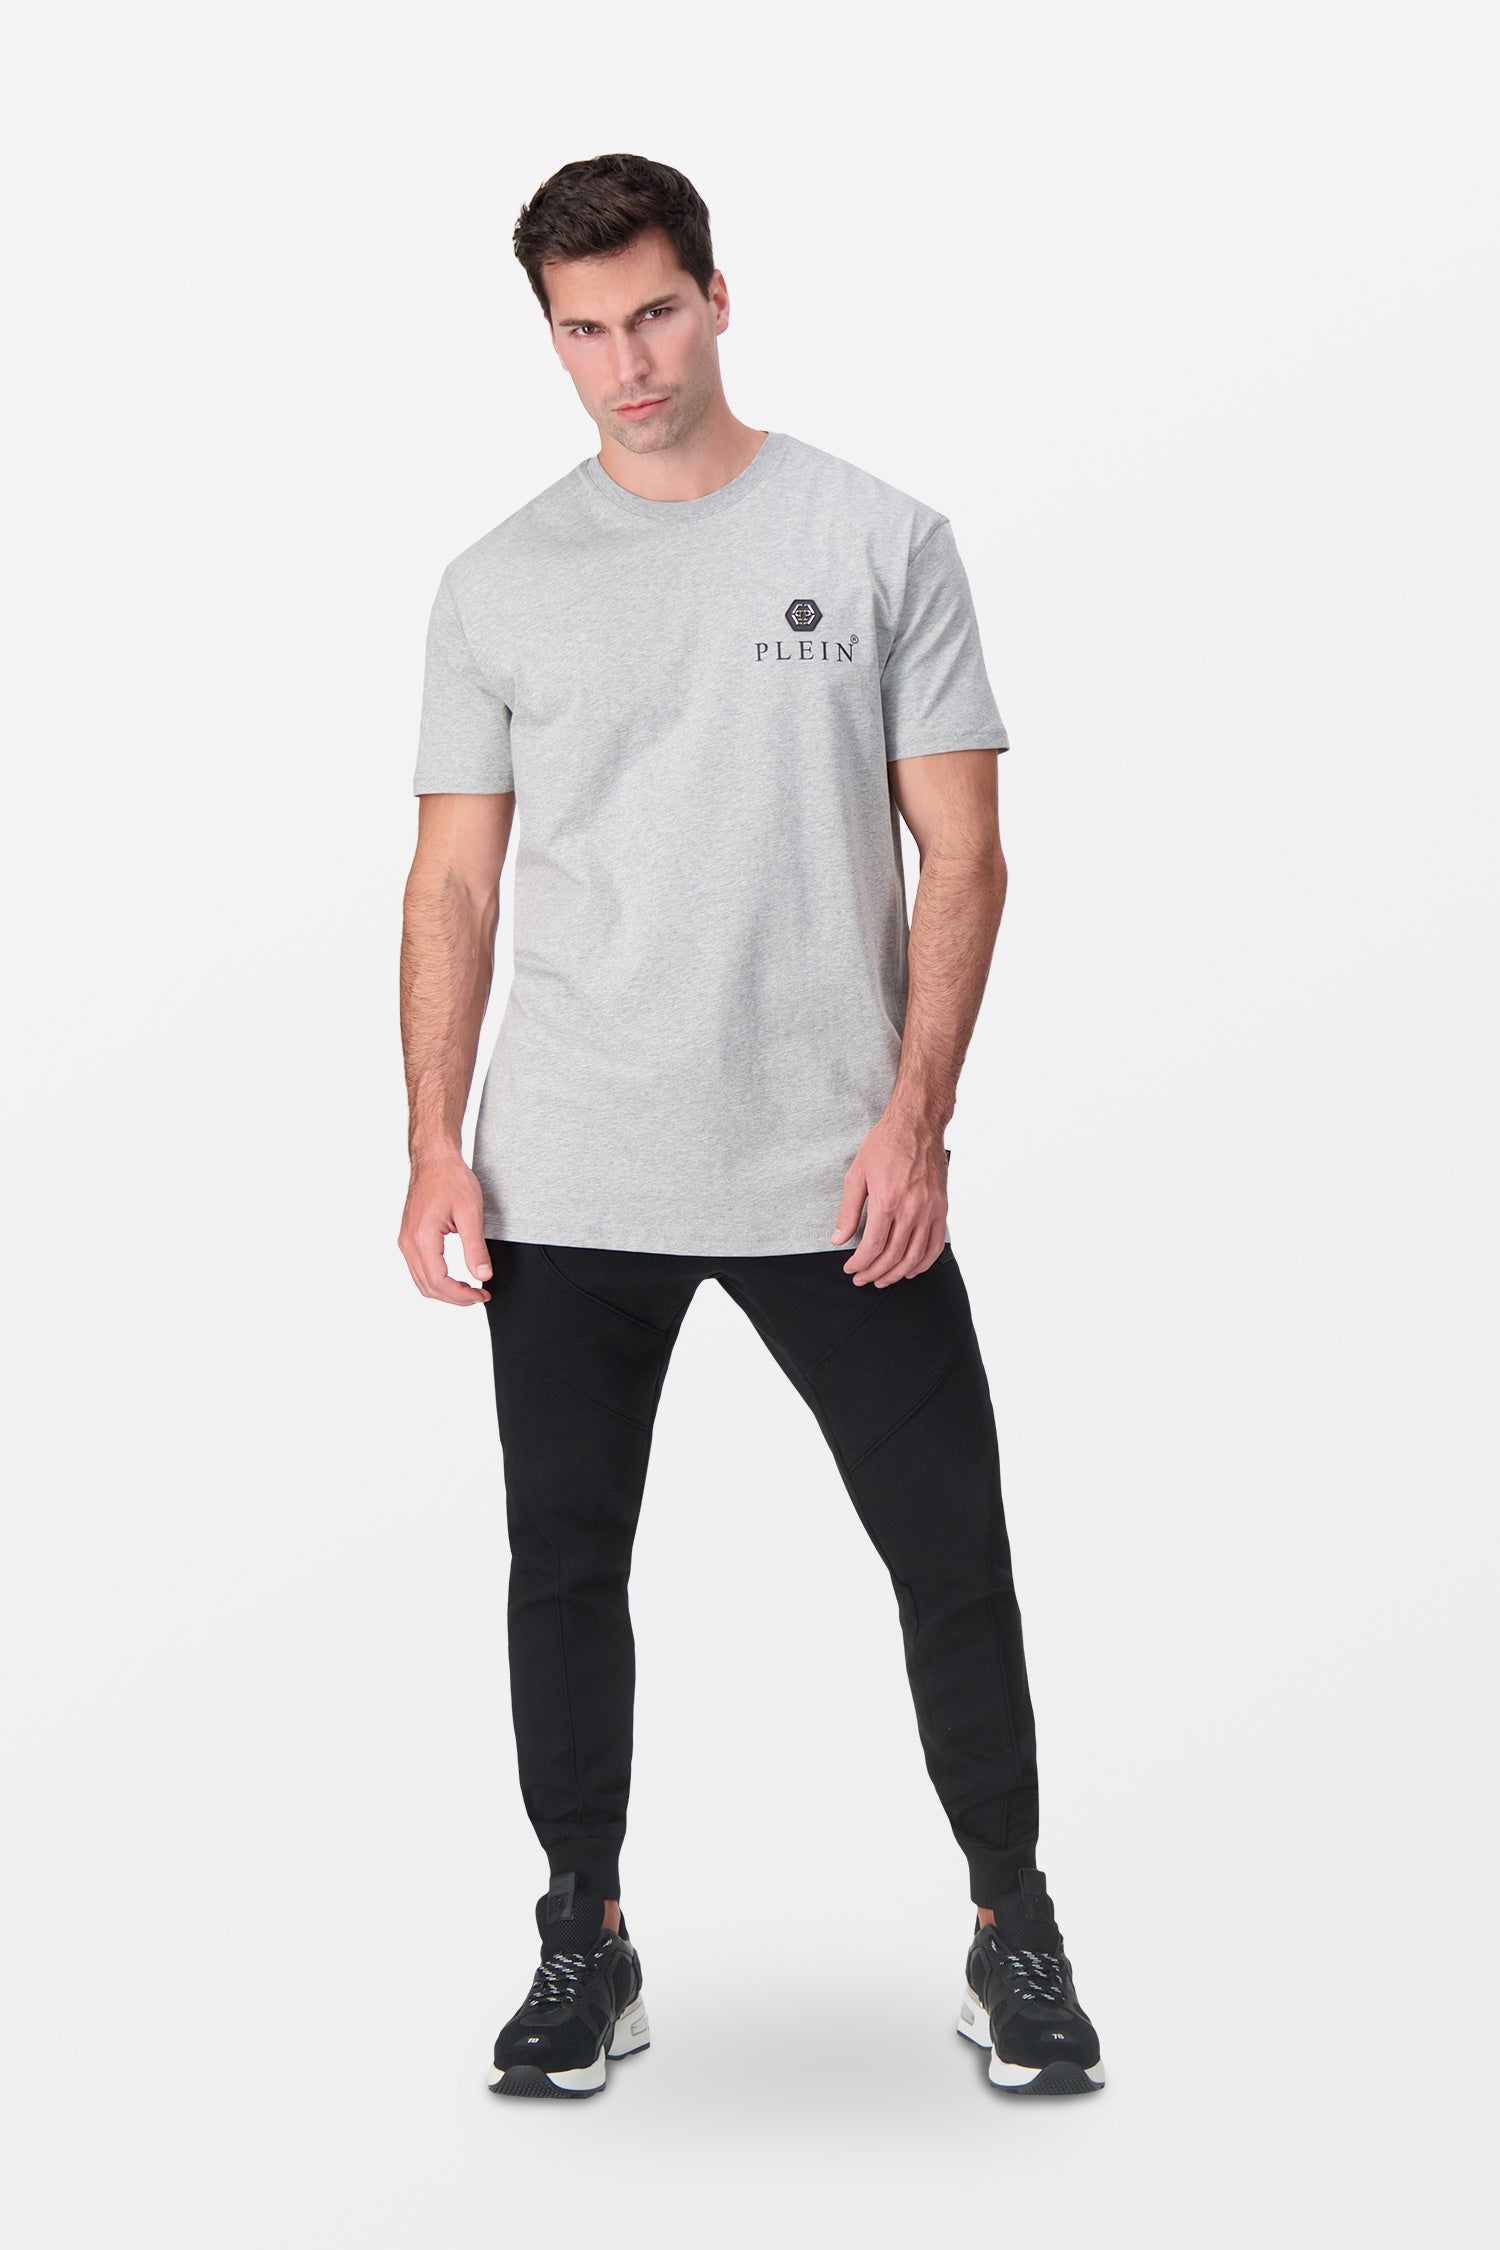 Philipp Plein Grey Round Neck SS Iconic Plein T-Shirt